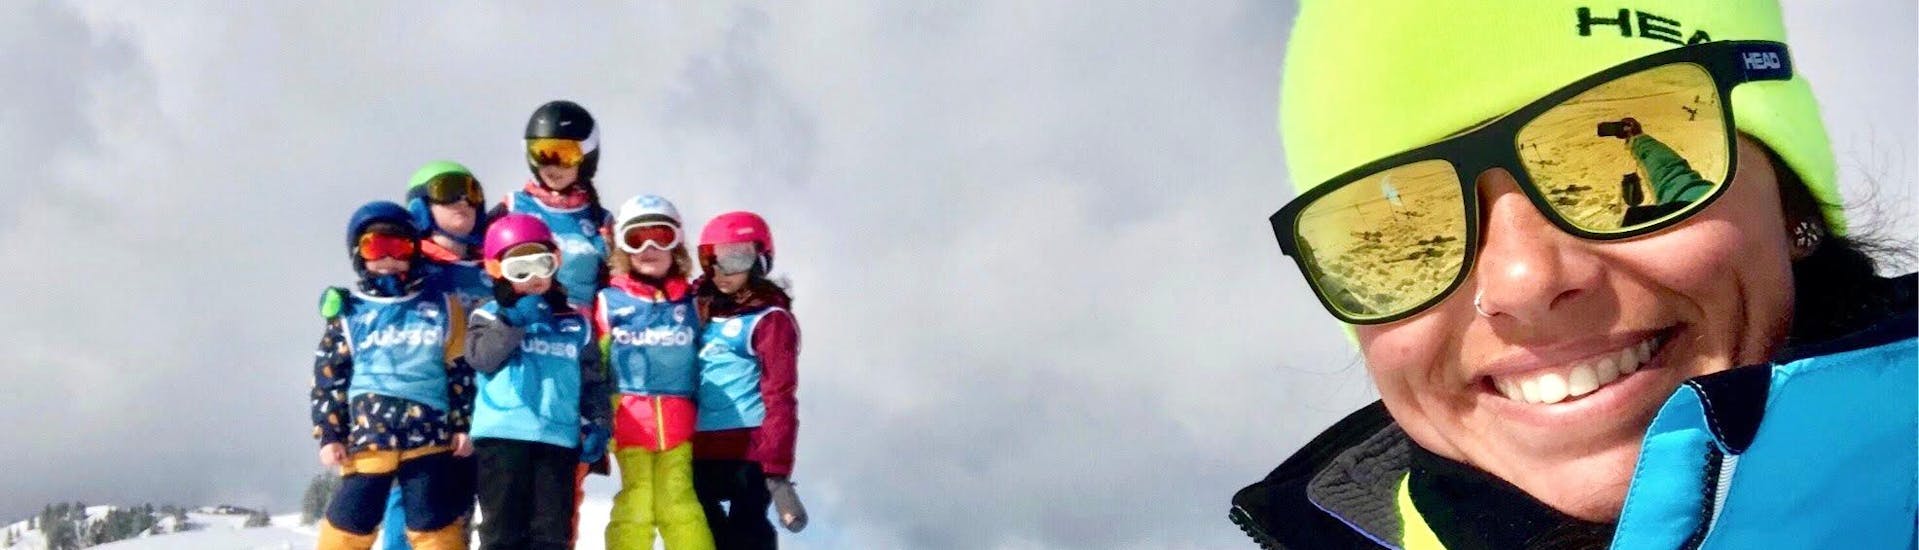 kids-ski-lessons-morning-easy2ride-avoriaz-hero